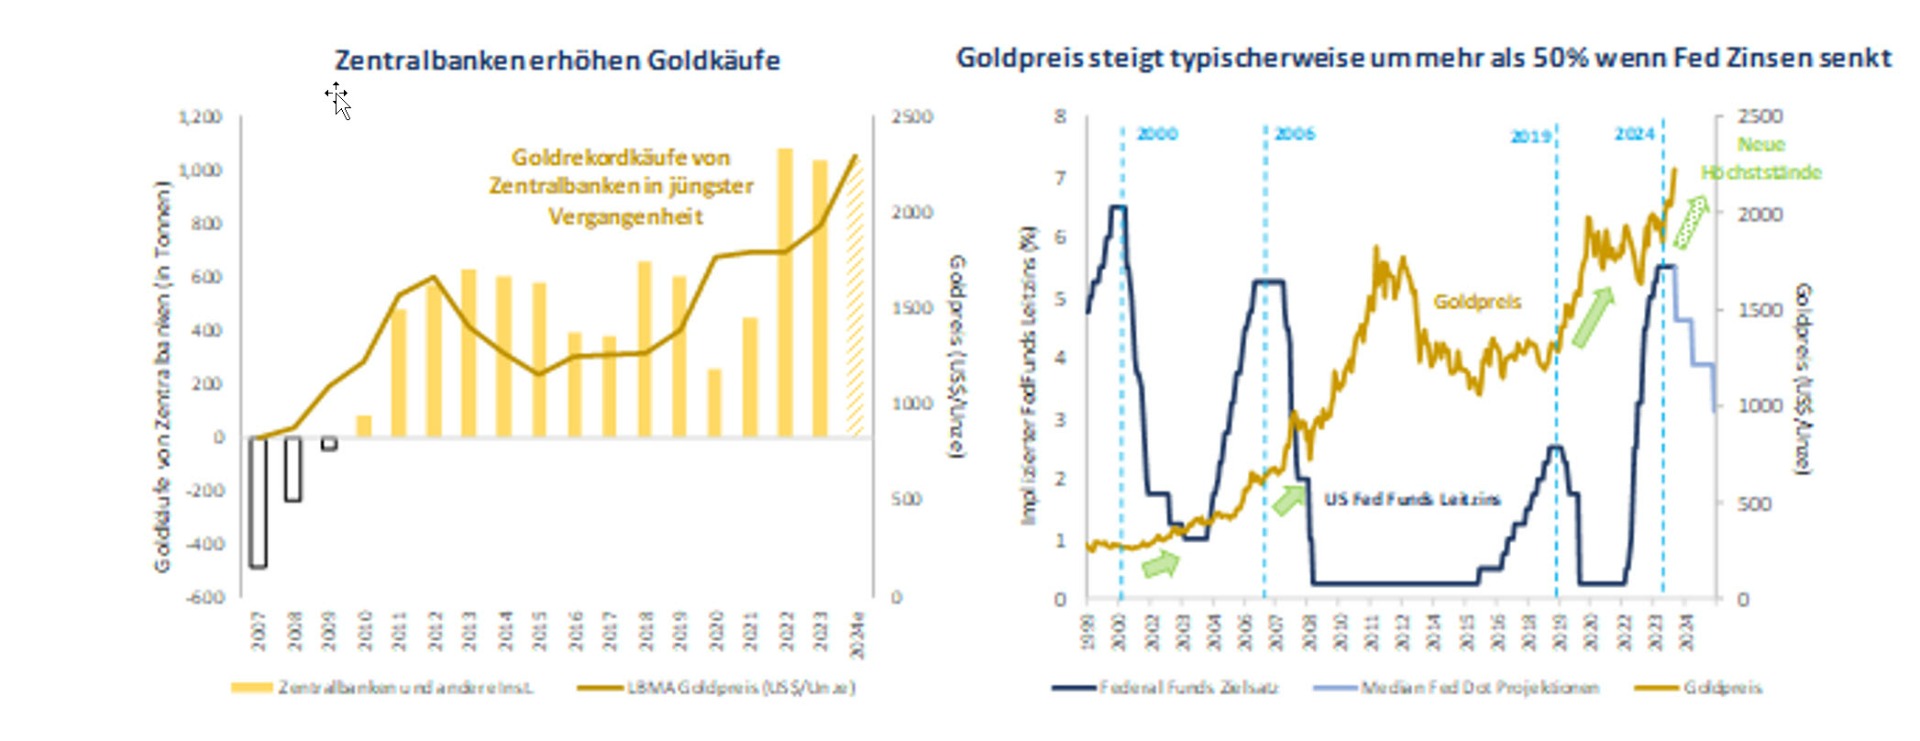 Goldbesitz Zentralbanken